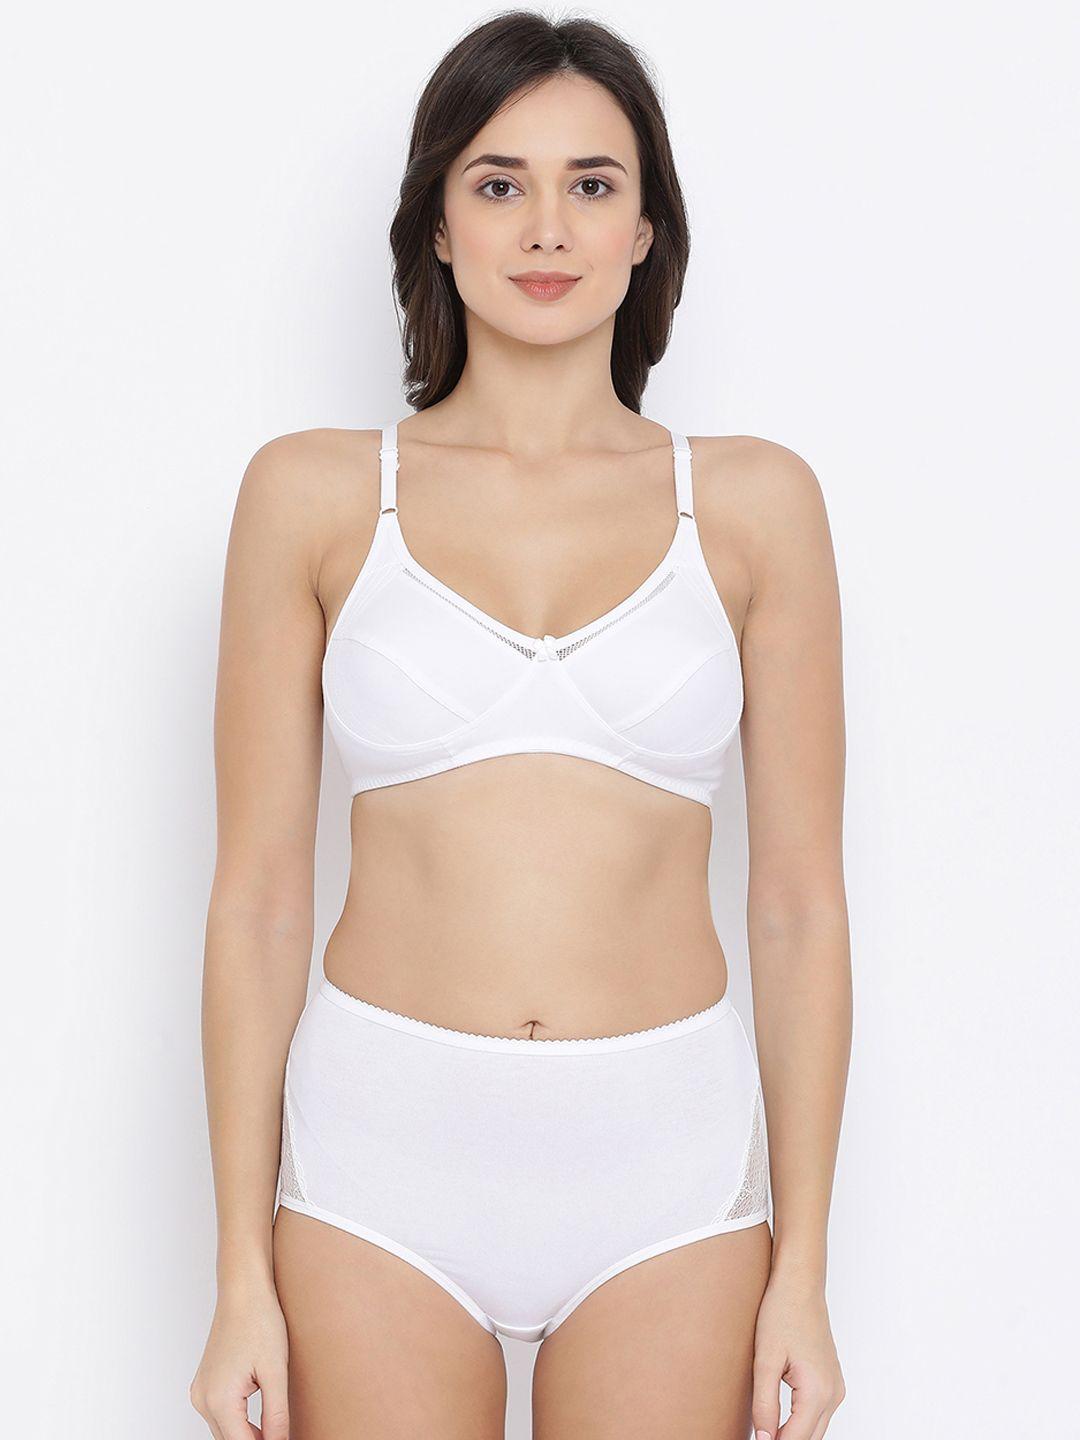 clovia women white solid lingerie set combbp46032b